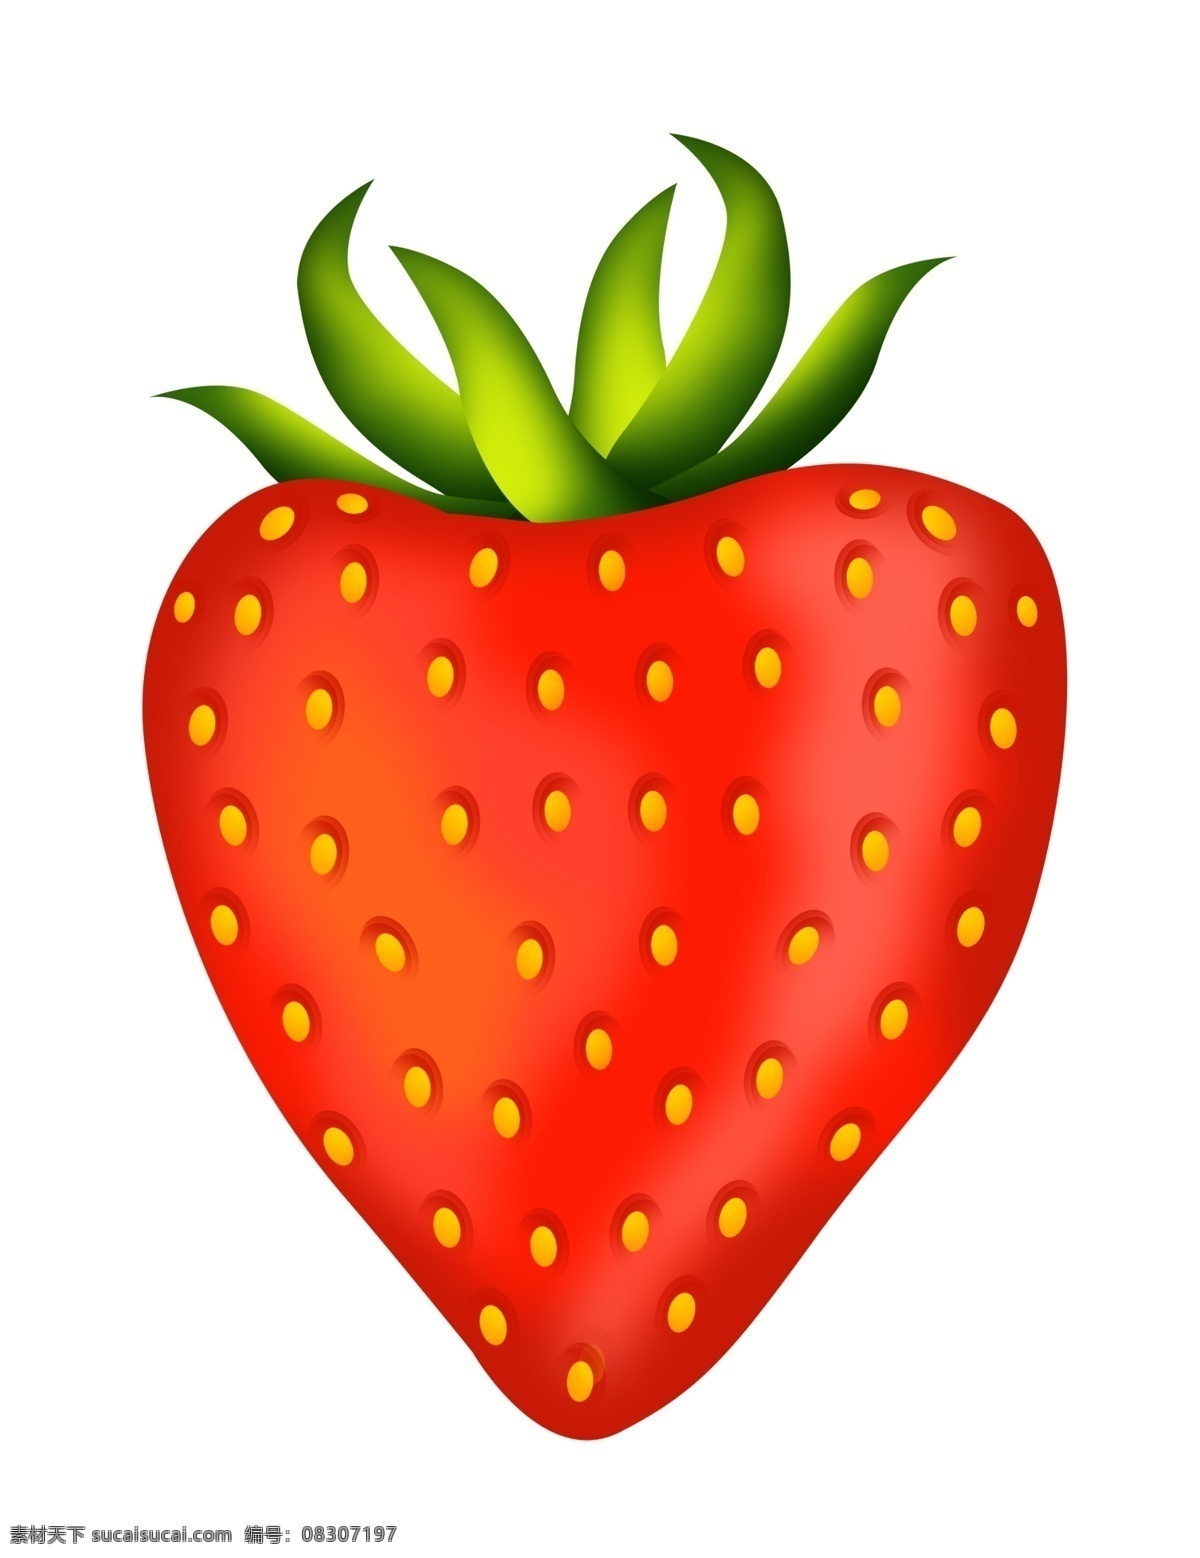 仿真 红色 草莓 插画 手绘仿真草莓 红色草莓插画 美食 食物 美味的水果 手绘水果 手绘草莓